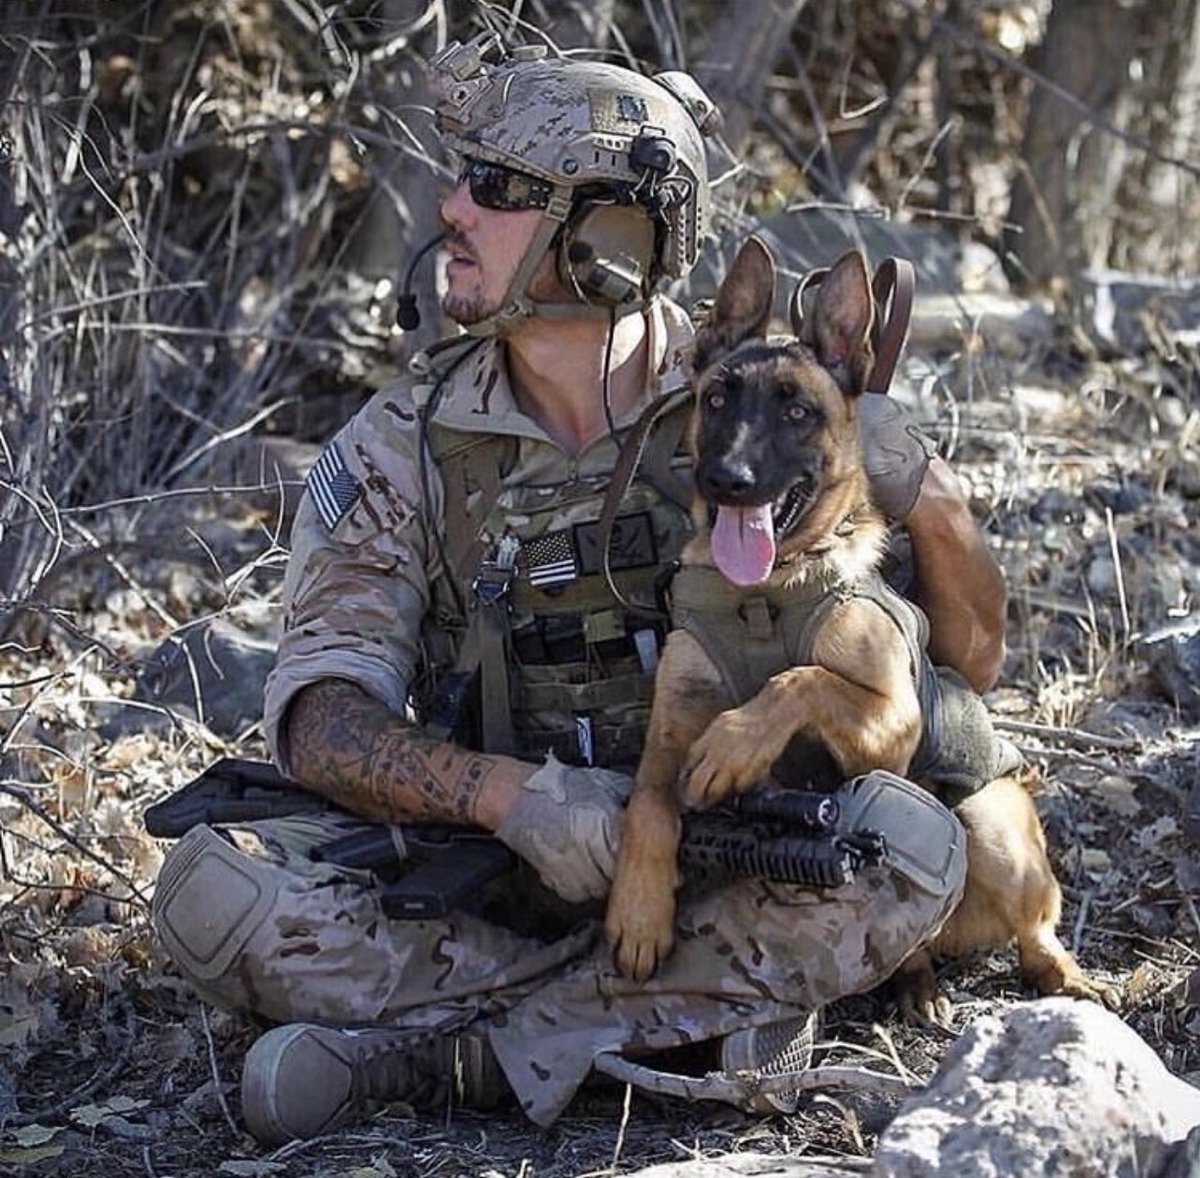 We Salute You: A bond that'll never be broken #military #soldier #usmilitary #usarmy #VetLivesMatter #K9 #Dog #troops #patriotic #veteran #VeteransLivesMatter #Army #ManAndDog #ManAndHisDog